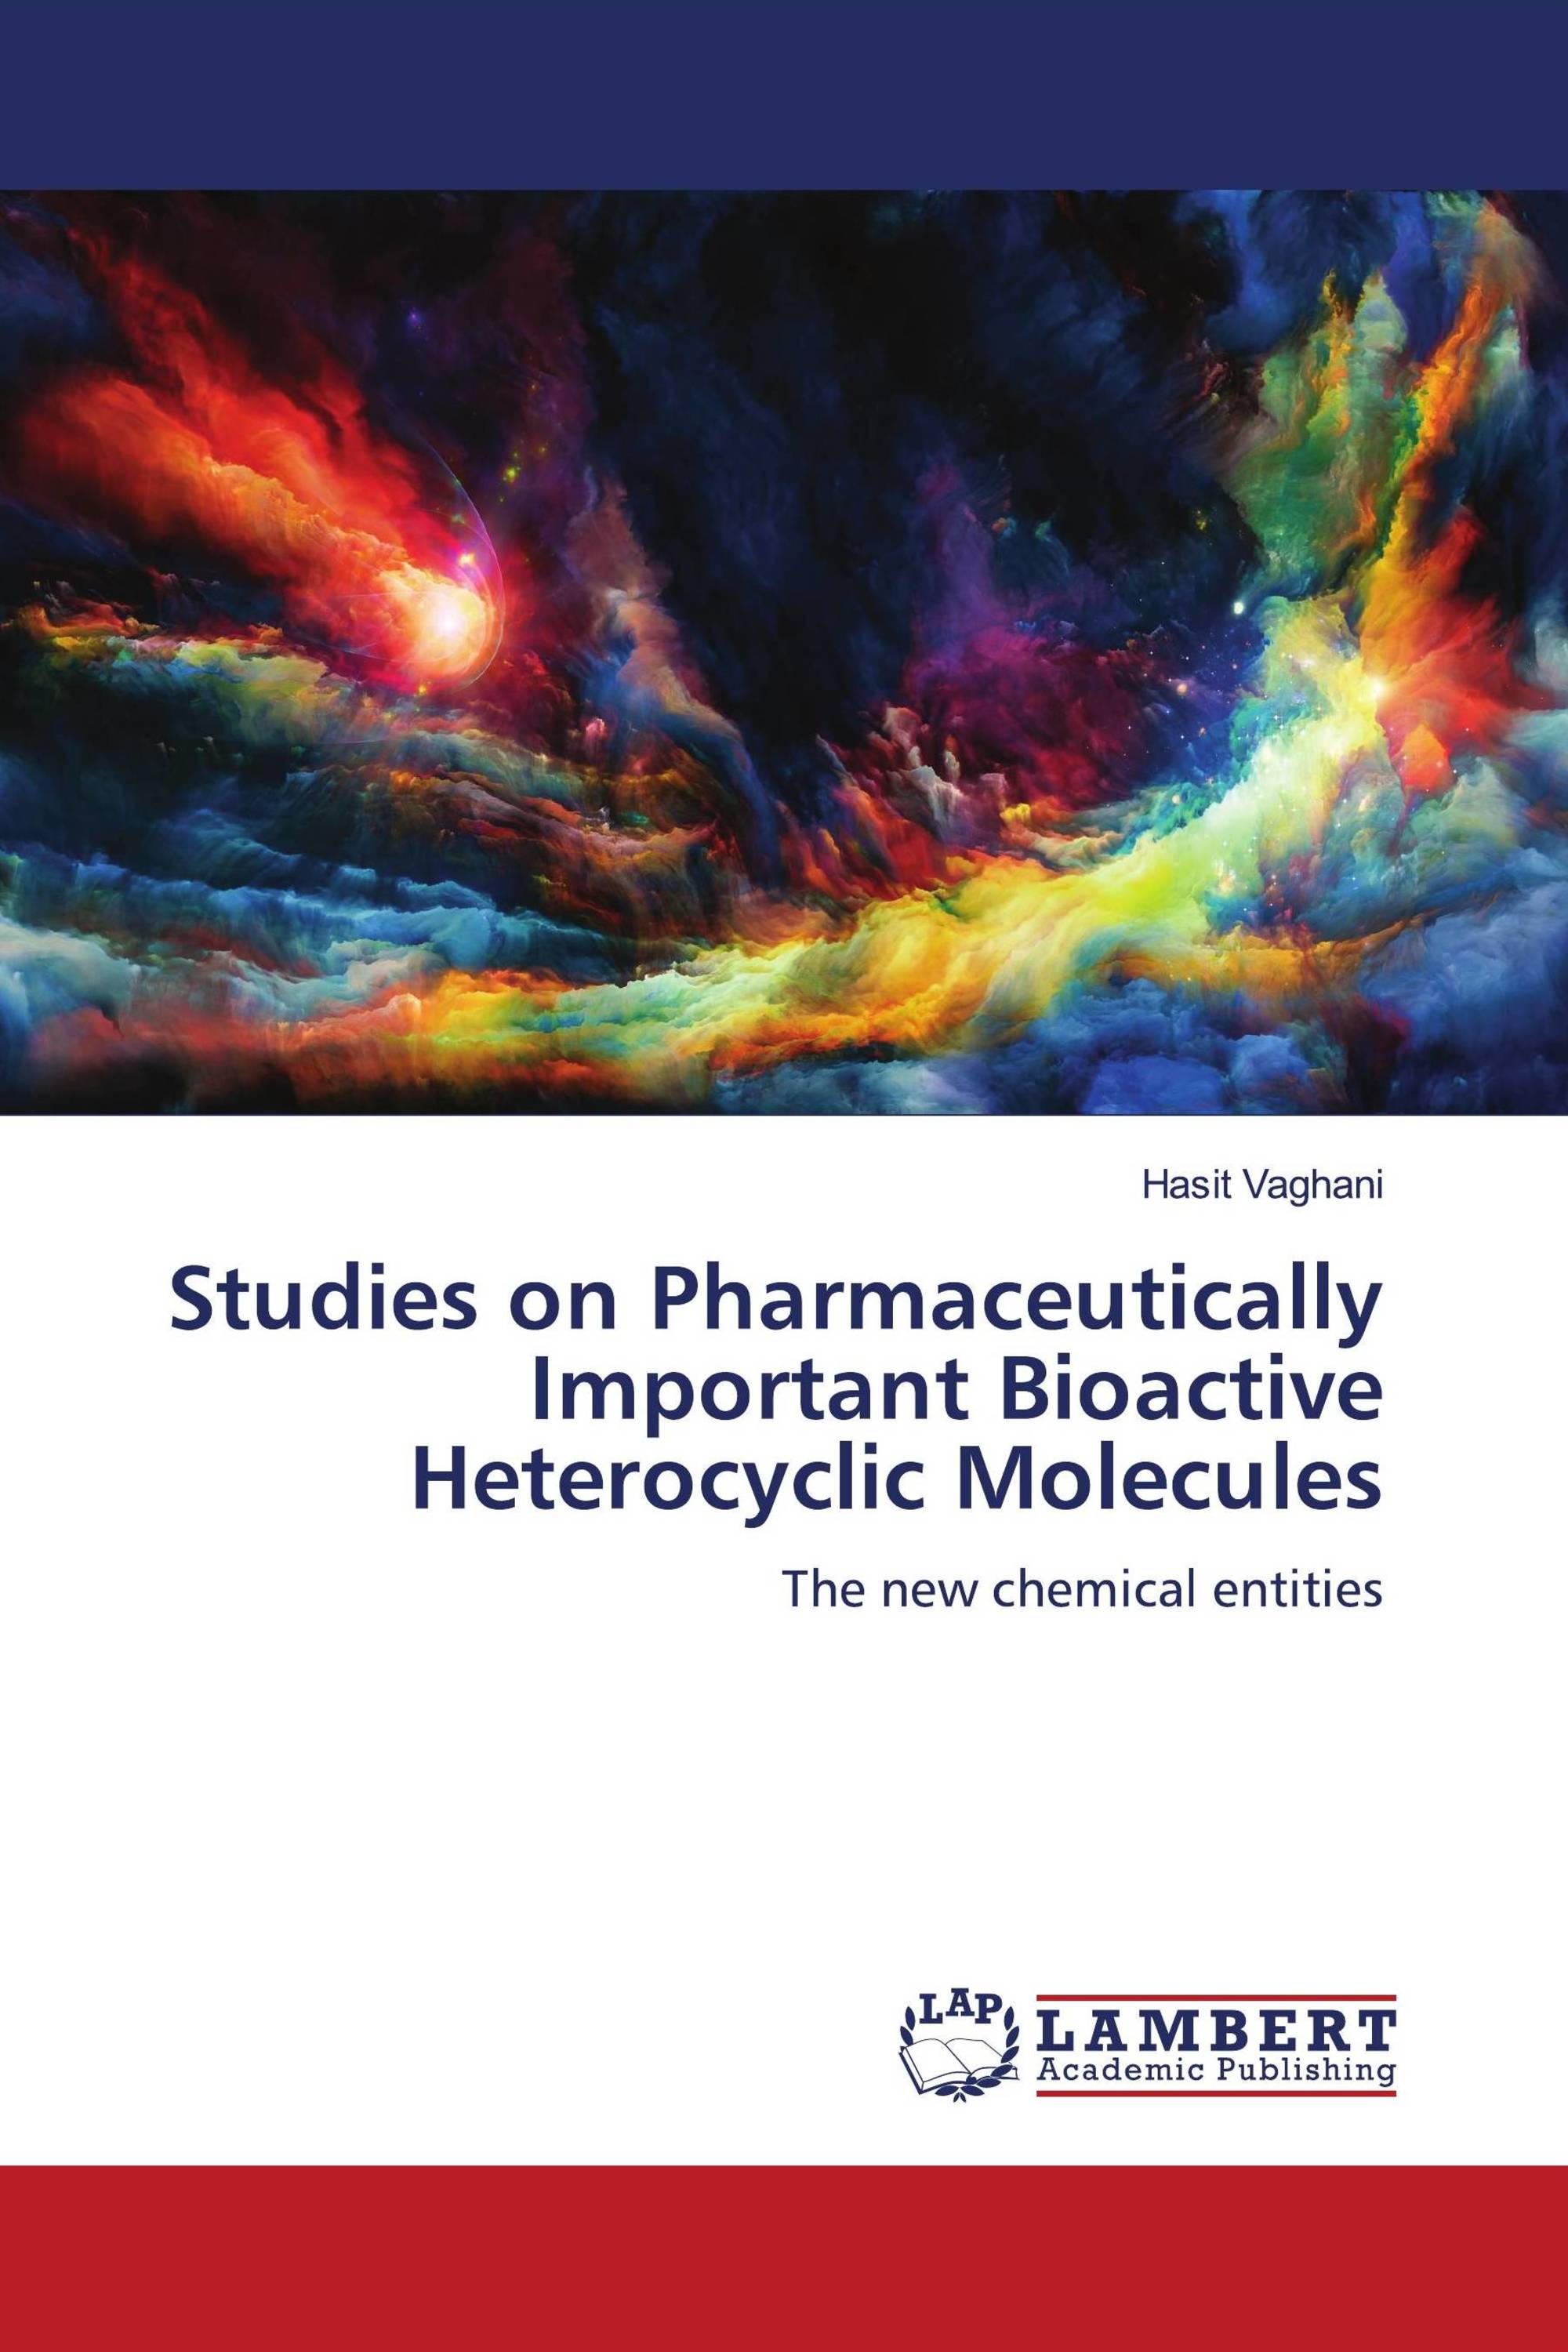 Studies on Pharmaceutically Important Bioactive Heterocyclic Molecules